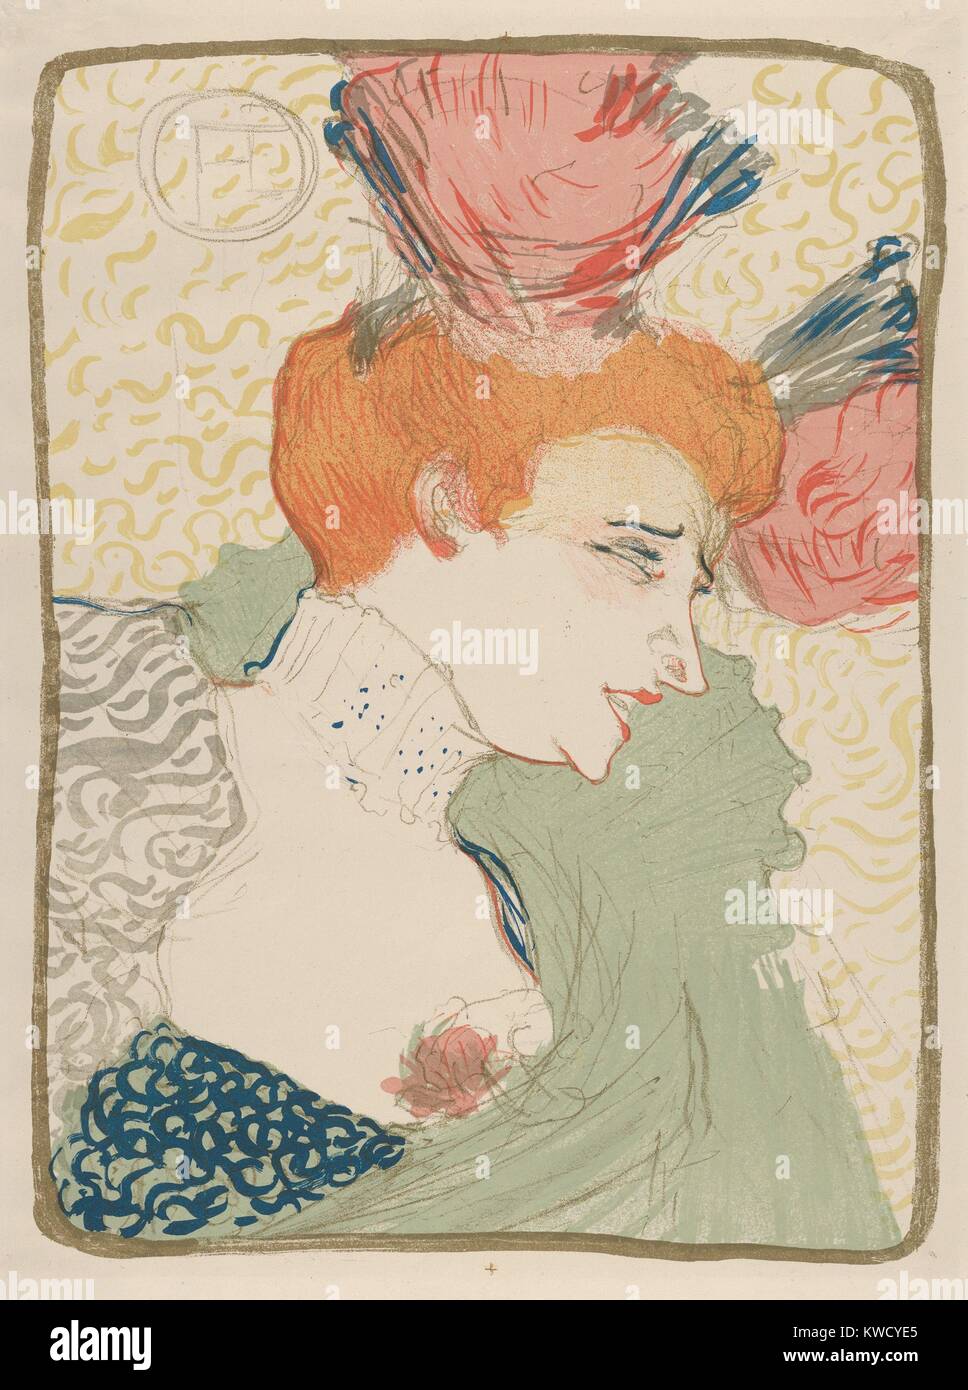 Mademoiselle Marcelle prêteur, par Henri de Toulouse-Lautrec, 1895, Français Imprimer postimpressionniste. La chanteuse et danseuse a été un favori de l'artiste qui les sa dans BSLOC 12 lithographies (2017 5 70) Banque D'Images